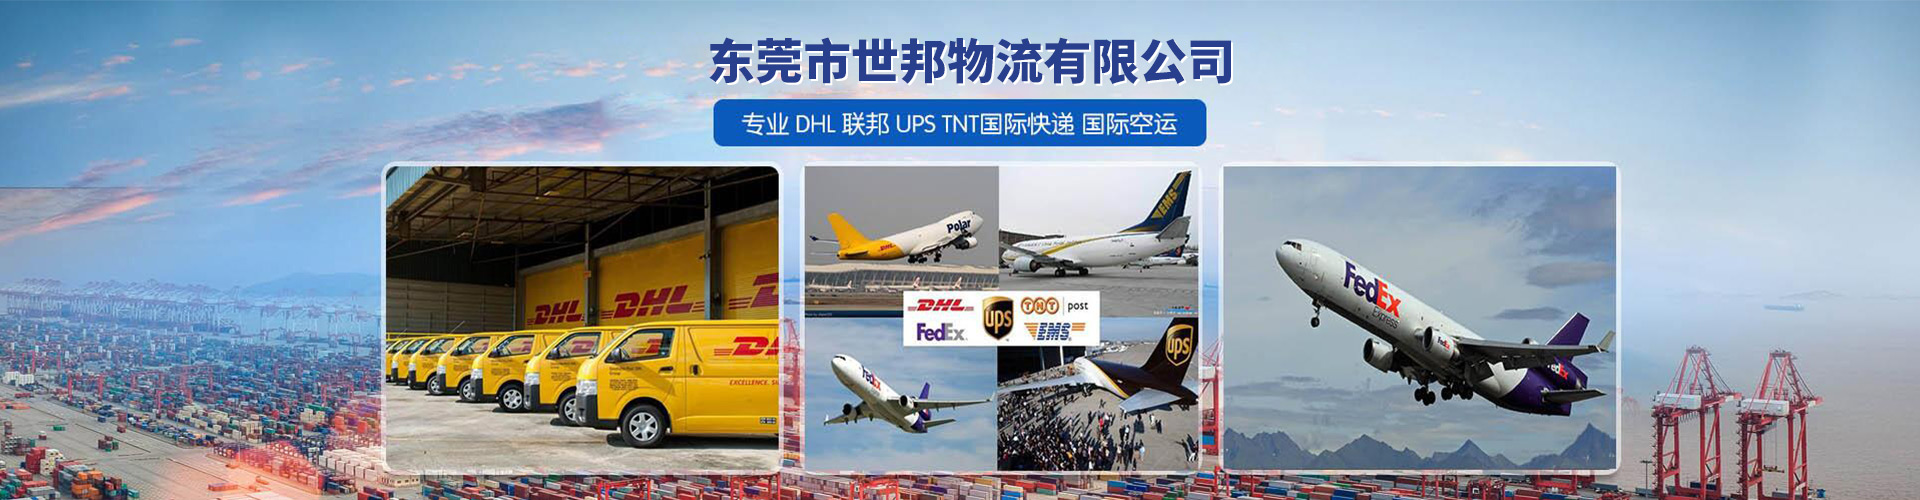 潮州DHL国际快递寄件流程